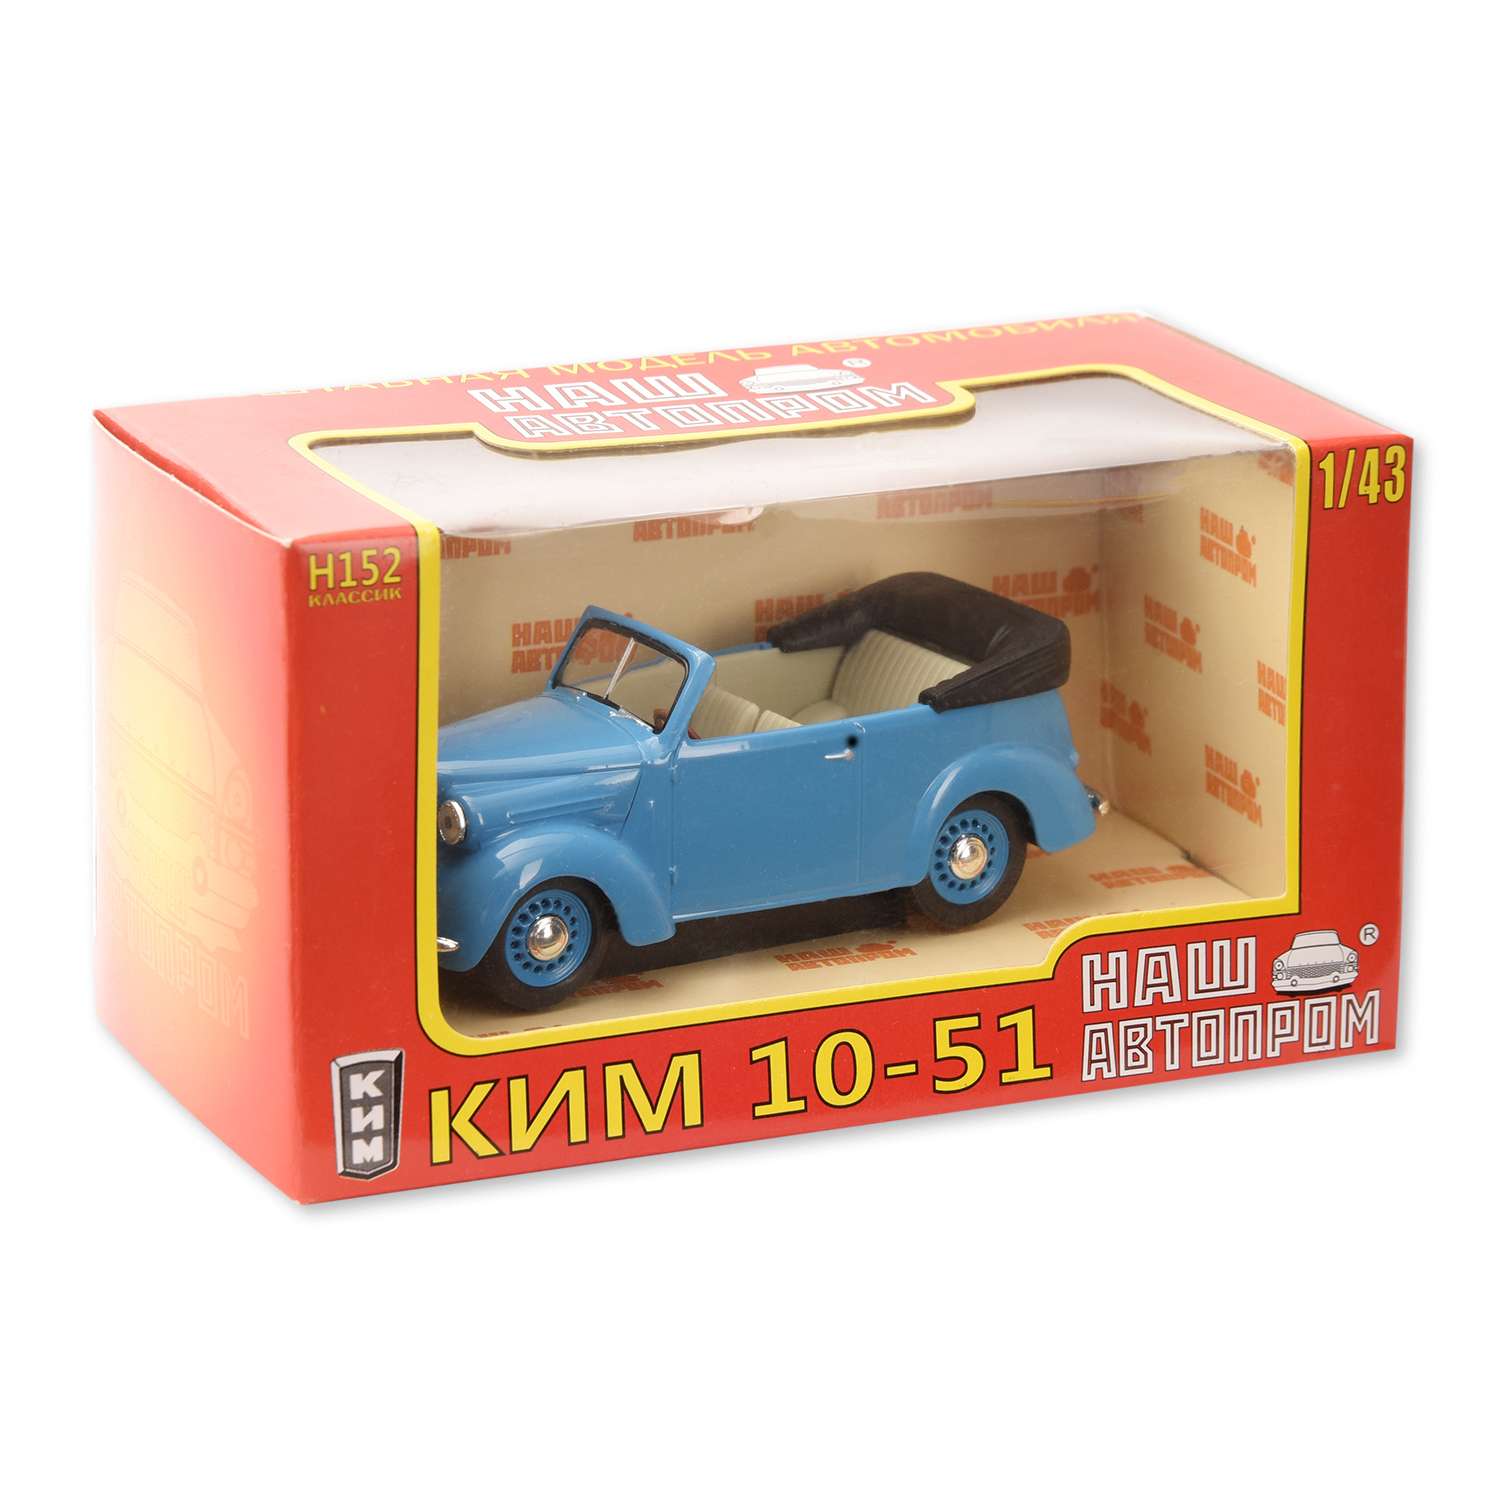 Машинка Наш автопром Ким-10-51 1/43 в ассортименте Н152 - фото 12